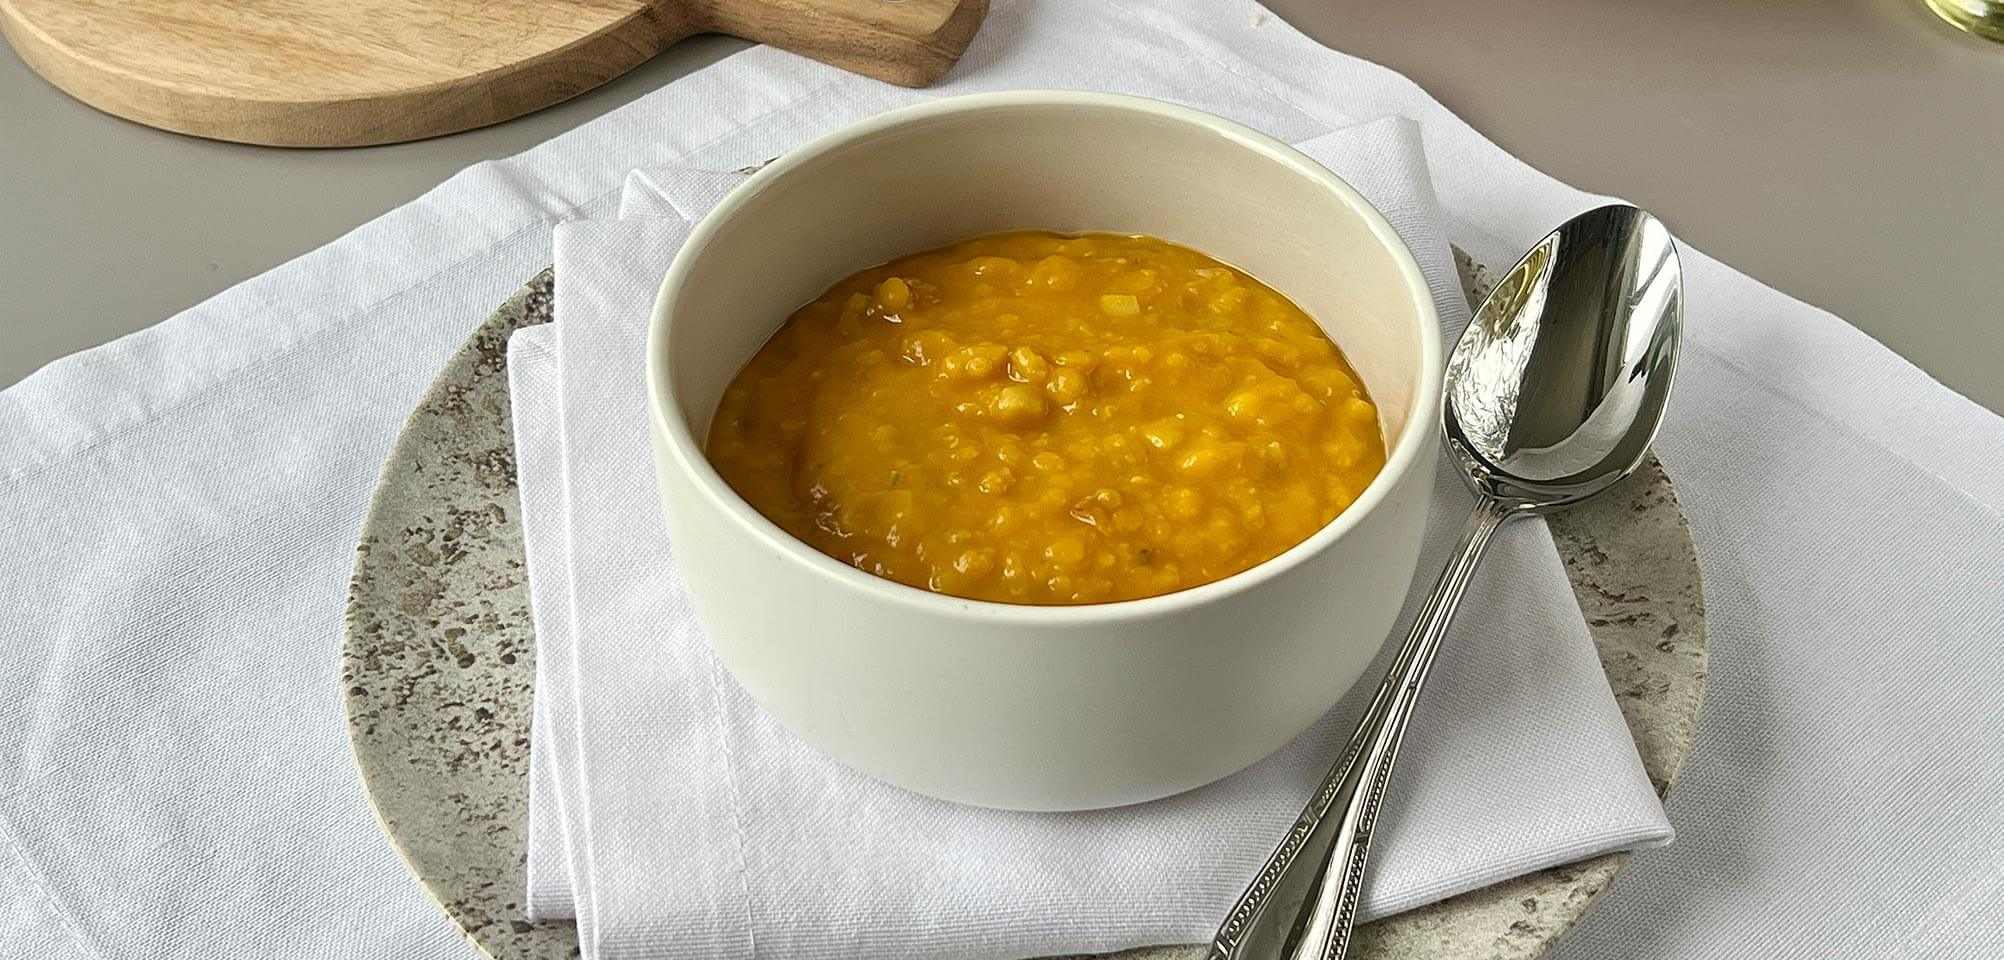 Овощной суп с тыквой и чечевицей